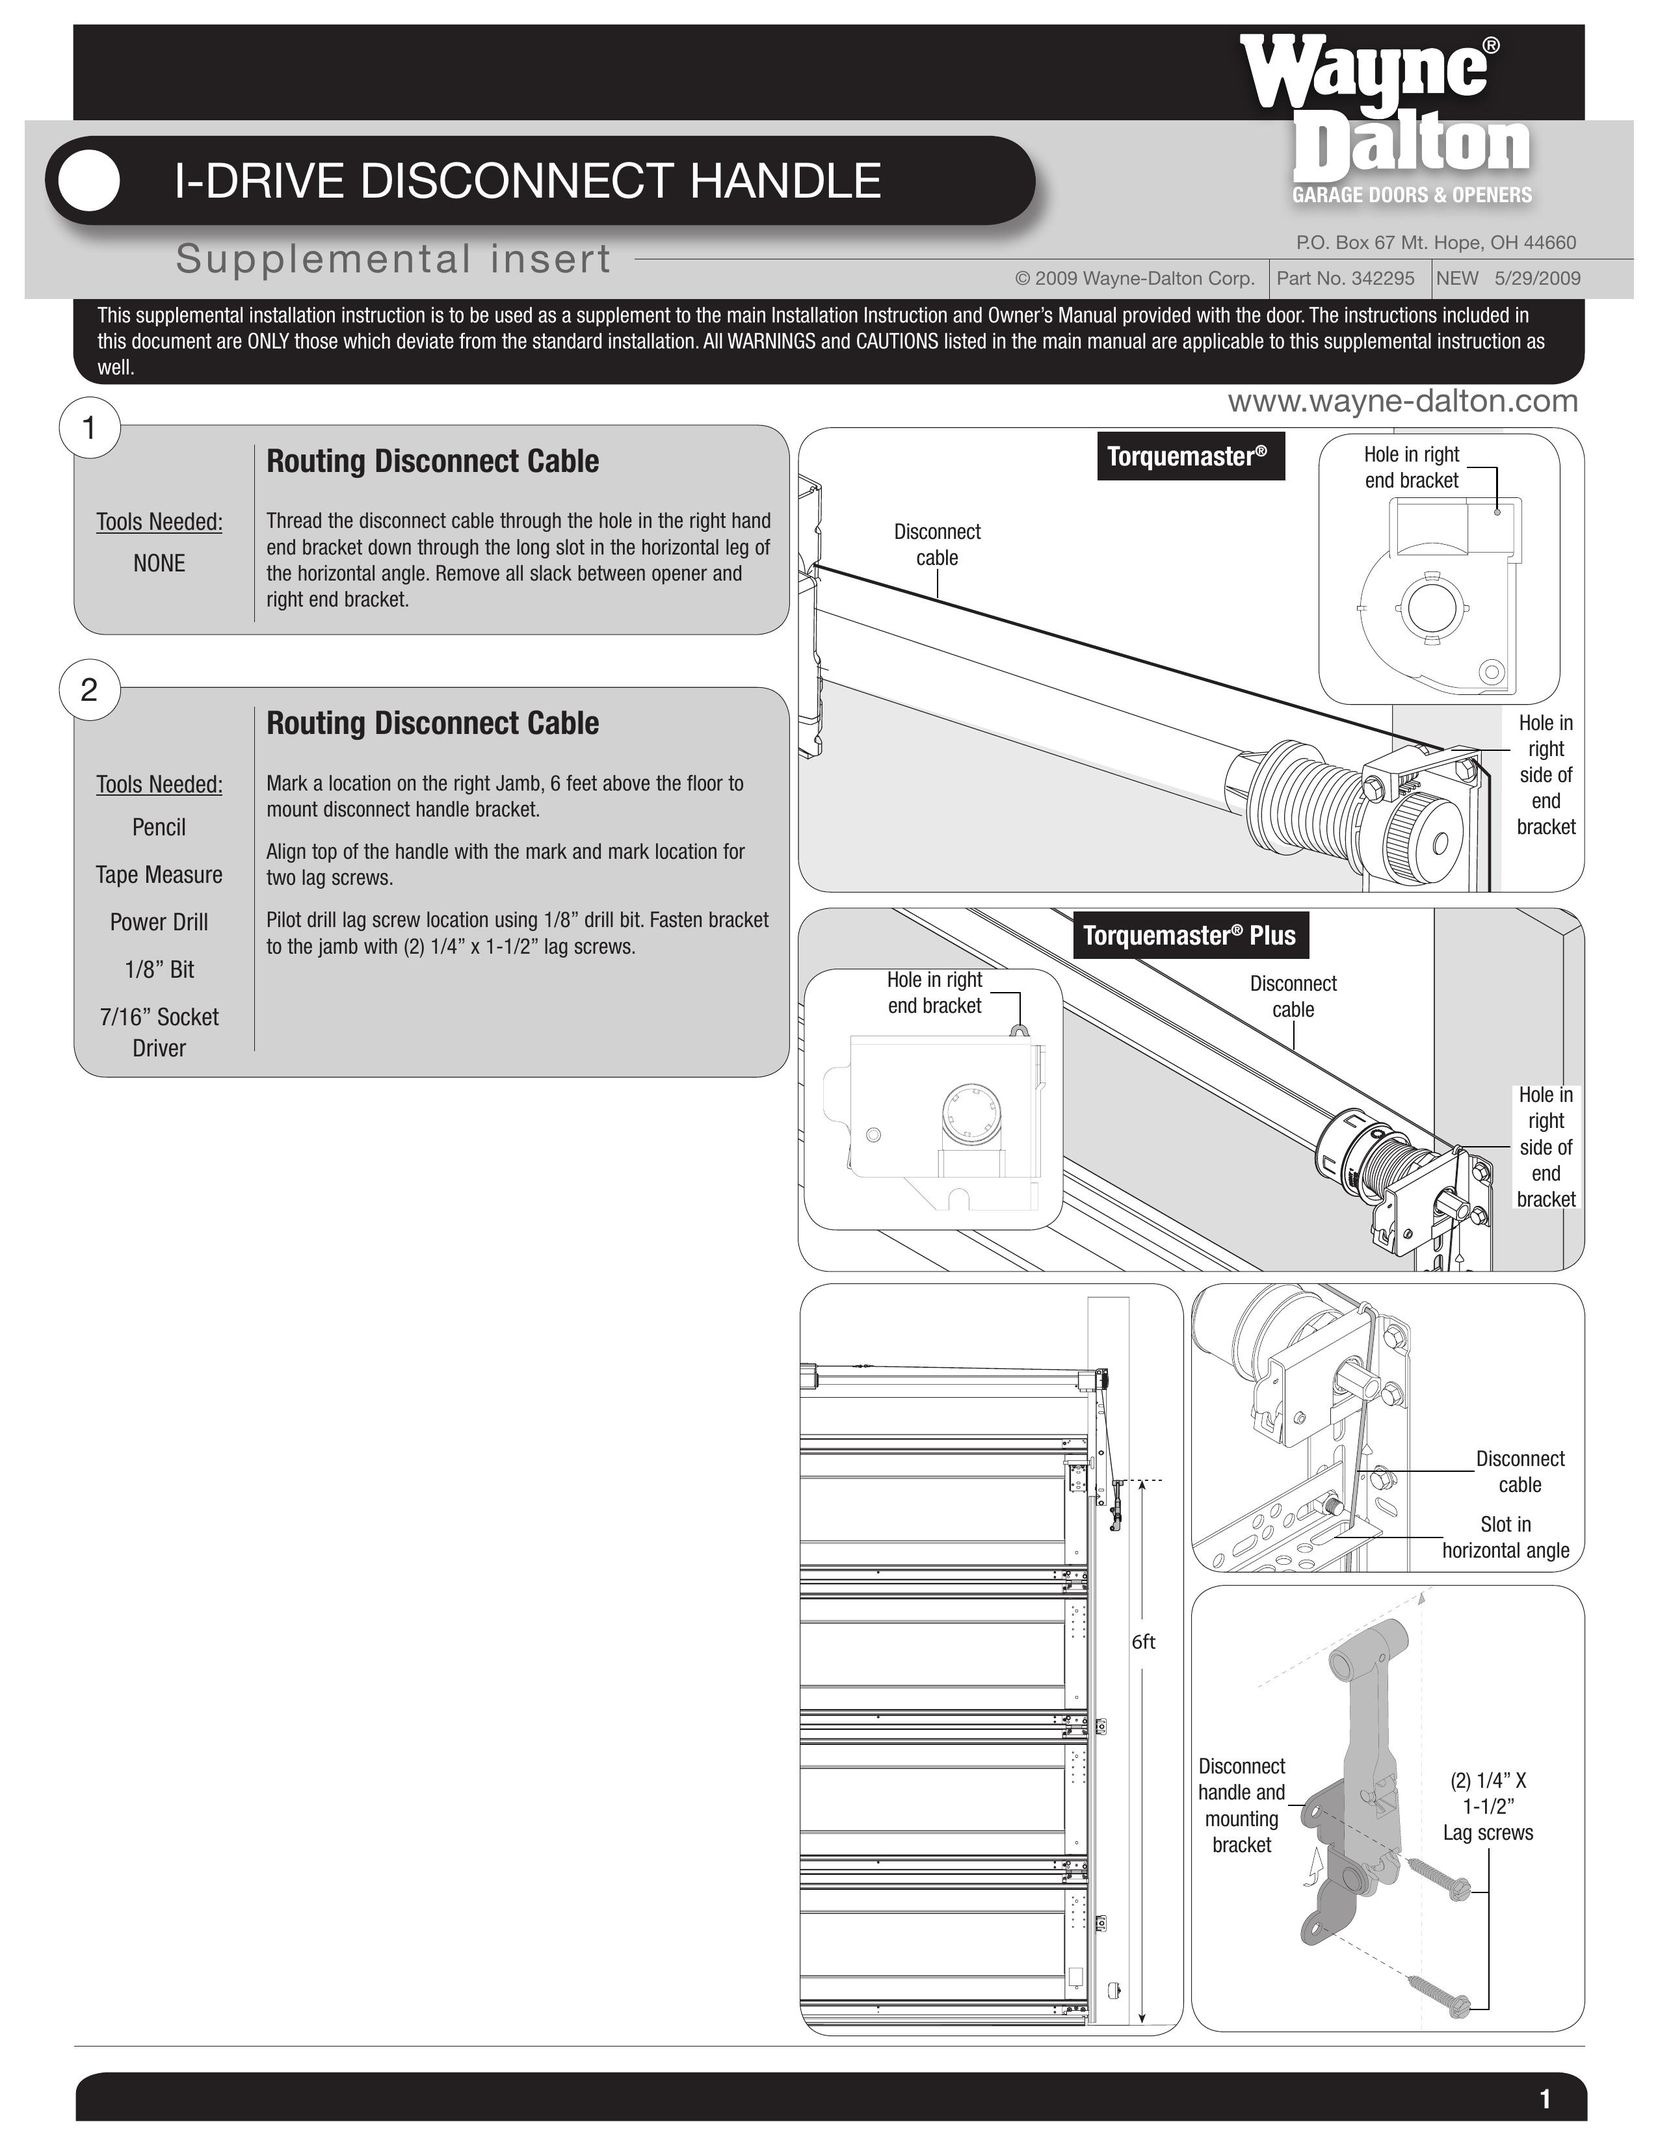 Wayne-Dalton 342295 Garage Door Opener User Manual